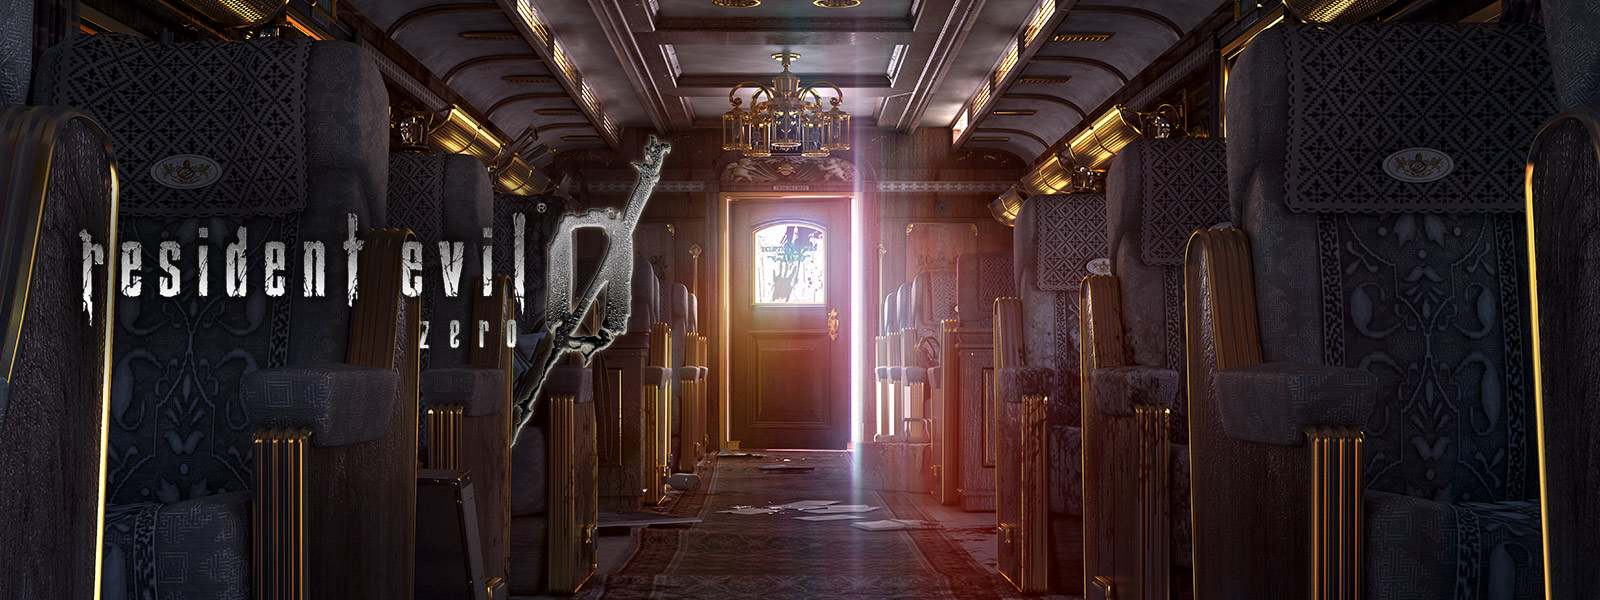 Resident Evil 0，豪華火車車廂內部裝飾的螢幕截圖